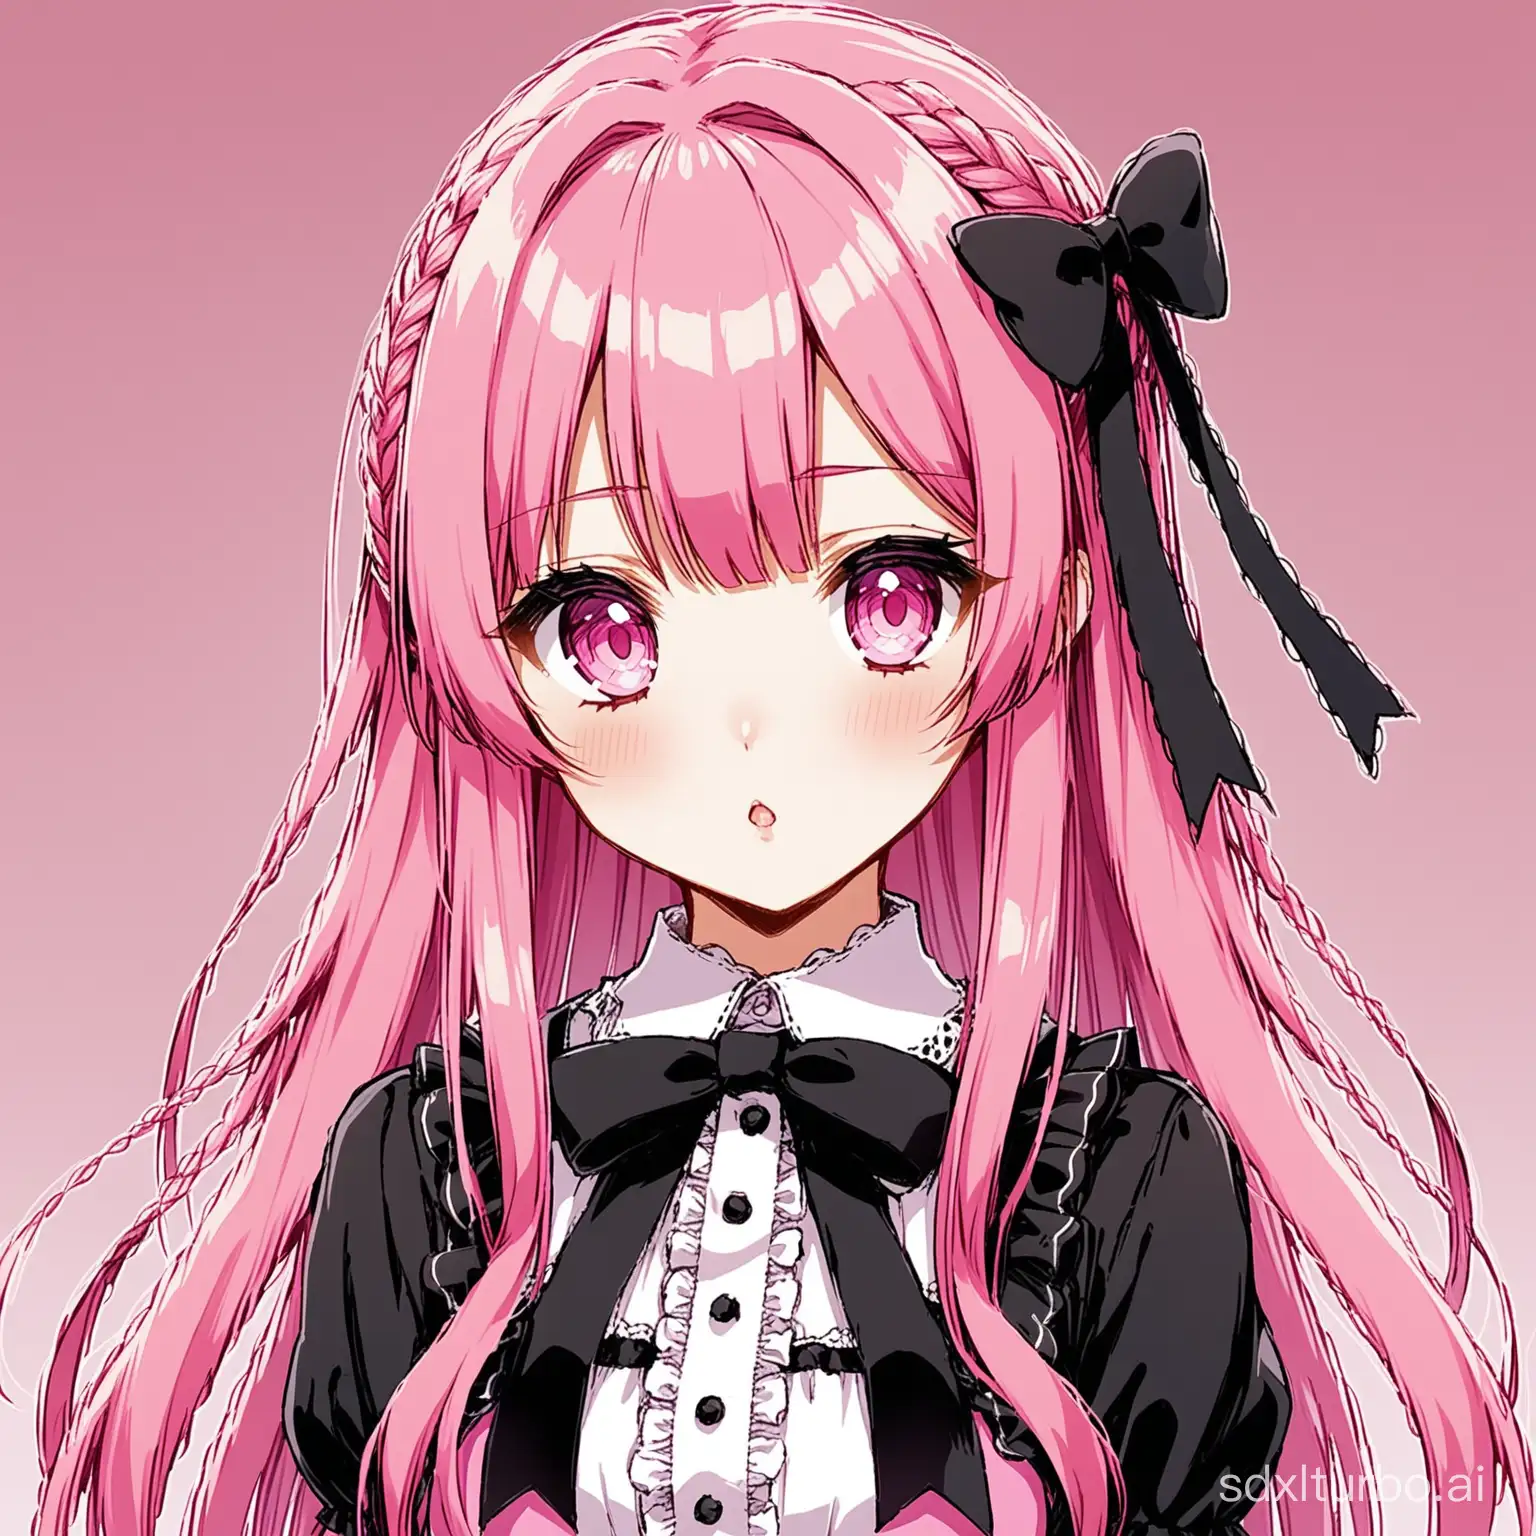 Jirai kei anime girl with pink hair